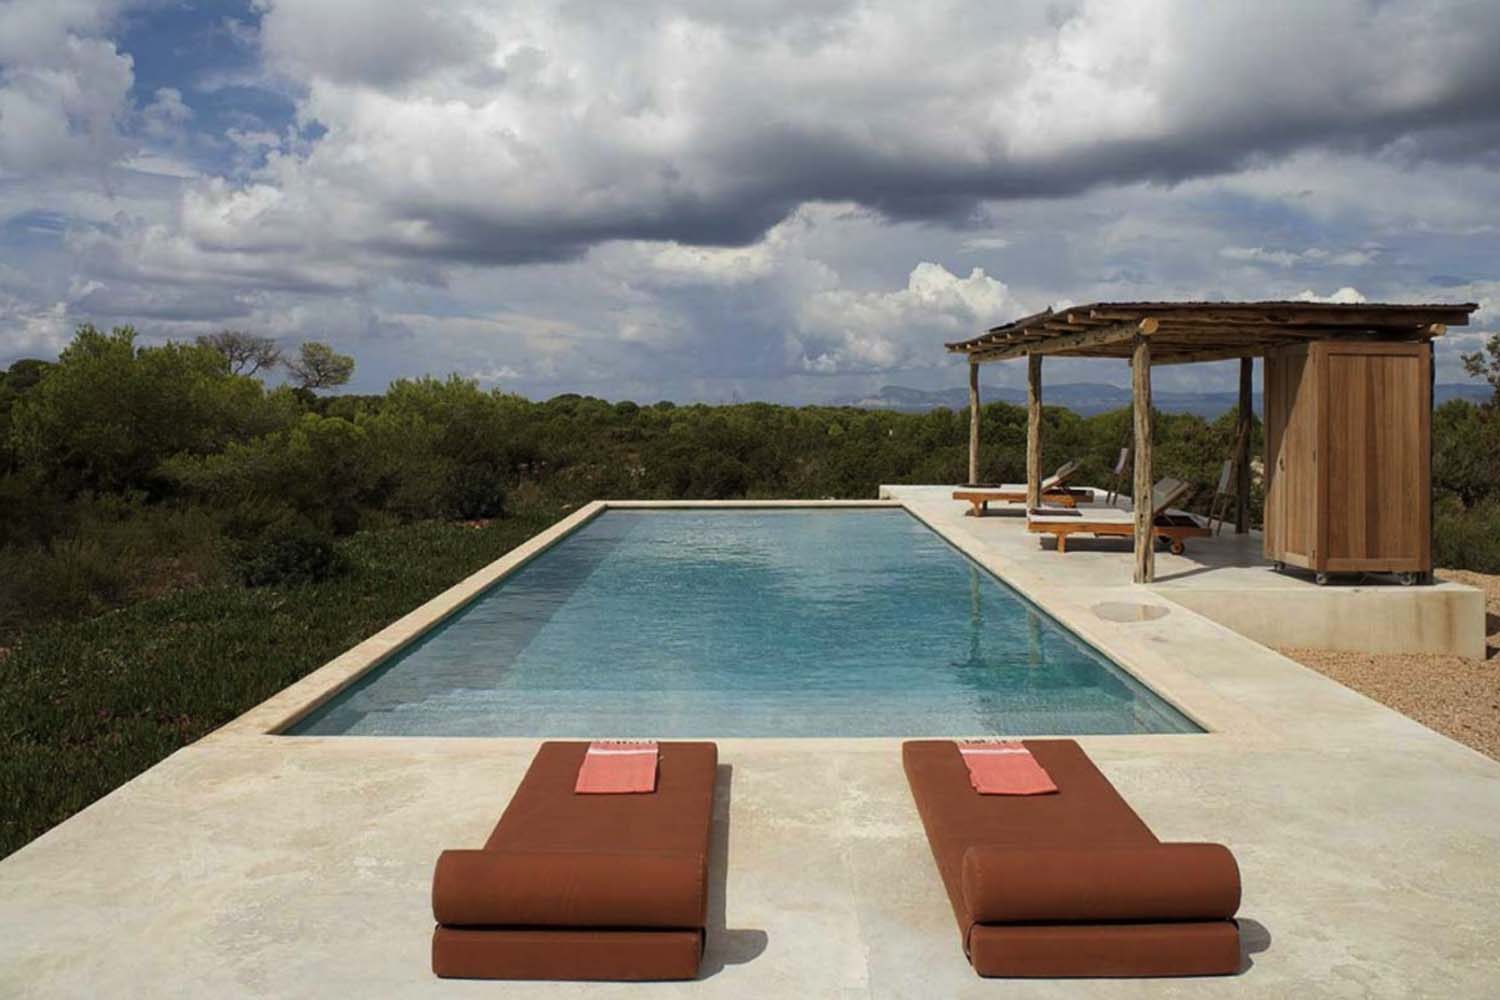 Luxury Seaside Villa Oasis-25-1 Kindesign